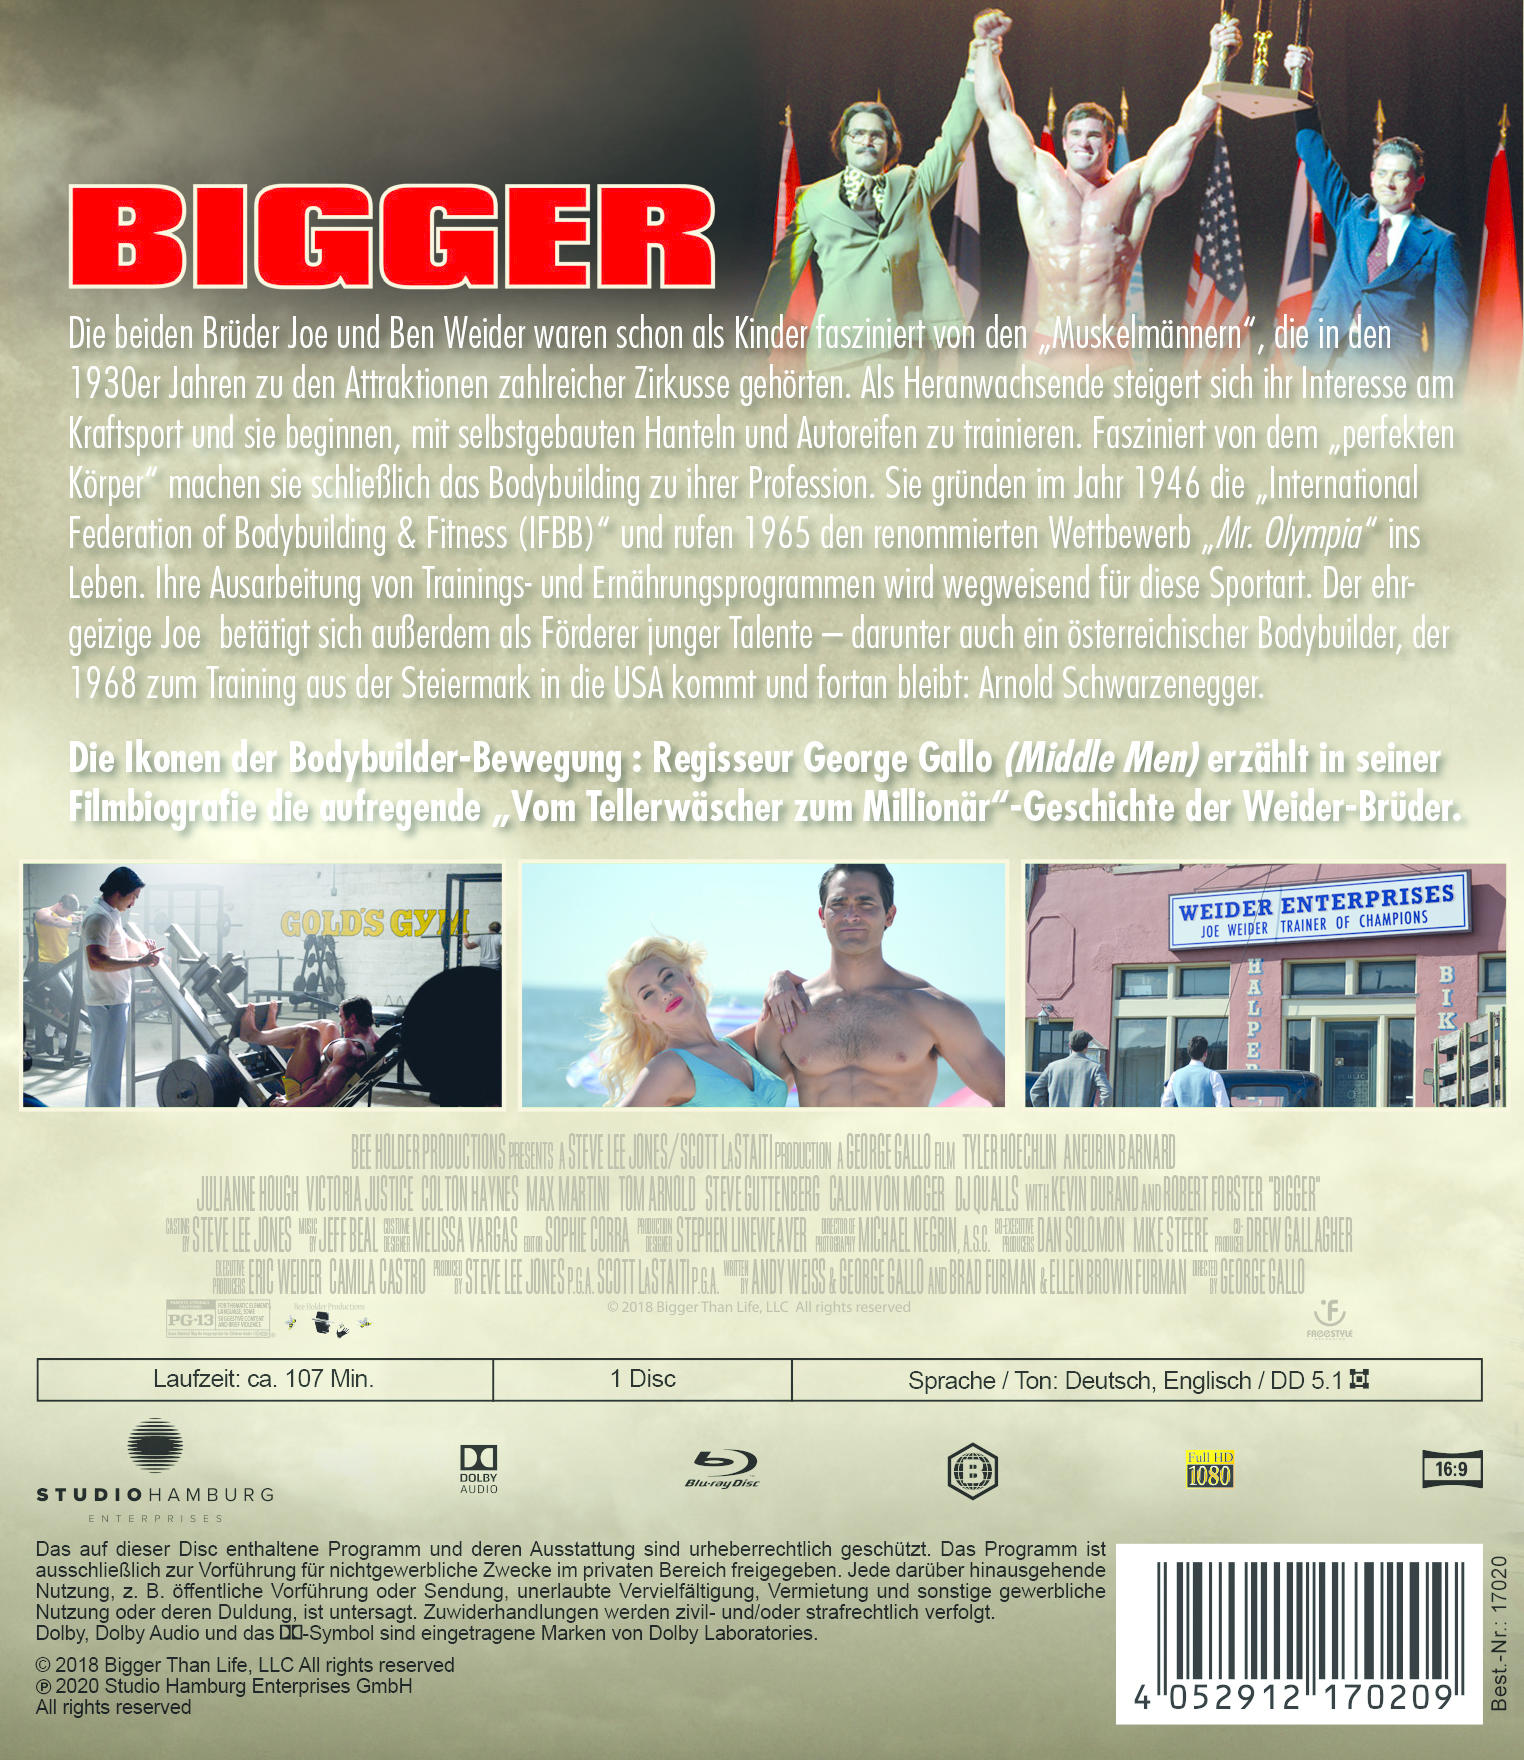 Weider Die - Blu-ray Joe Story Bigger